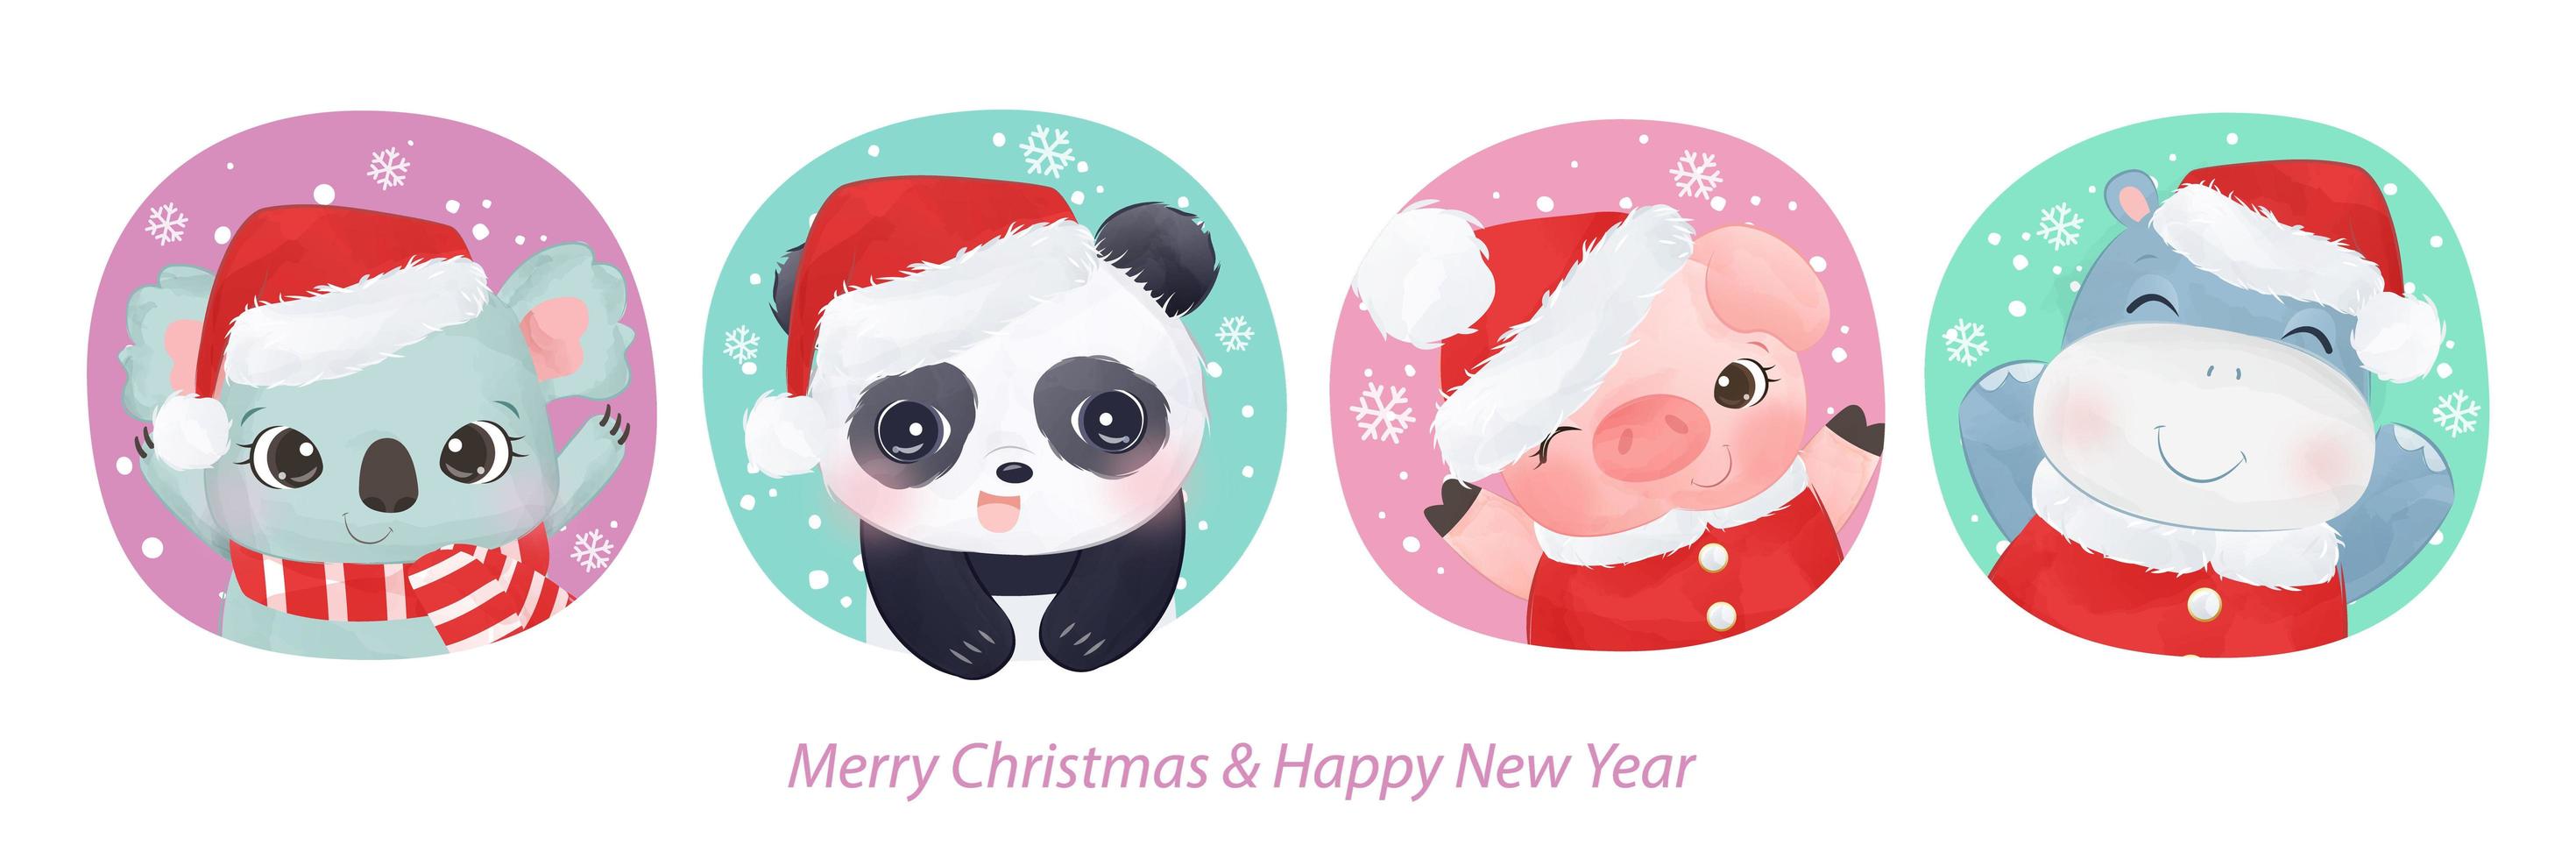 Weihnachtsgrußkarte mit entzückenden Tieren vektor